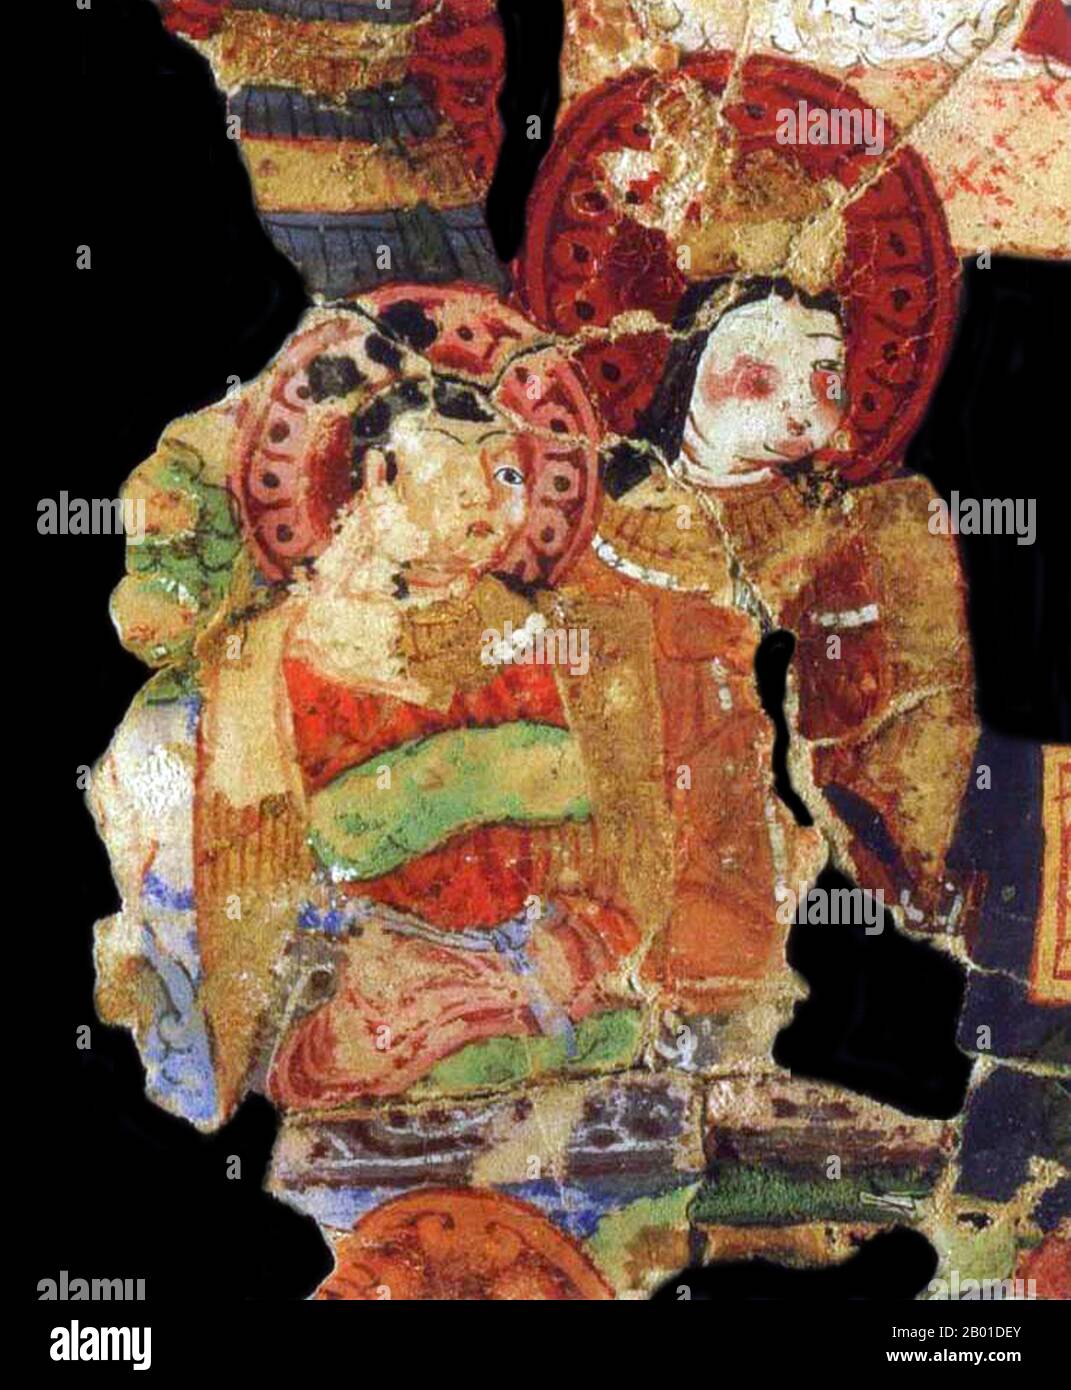 Chine : fragment d'un manuscrit manichéen illuminé avec deux divinités de Gaochang, Turfan Oasis, Xinjiang, vers 8th-9th siècle. Le manichéisme était la religion gnostique la plus importante. Au centre de l'enseignement manichéen, il y avait le dualisme, le monde lui-même, et toutes les créatures, faisaient partie d'une bataille entre le bien, représenté par Dieu, et le mauvais, les ténèbres, représenté par une puissance motivée par l'envie et la convoitise. Le manichéisme s'est répandu dans la plupart des pays connus du monde du 1st millénaire ce, de l'Espagne à la Chine. Mais la religion a disparu au 14th siècle et est actuellement éteinte. Banque D'Images